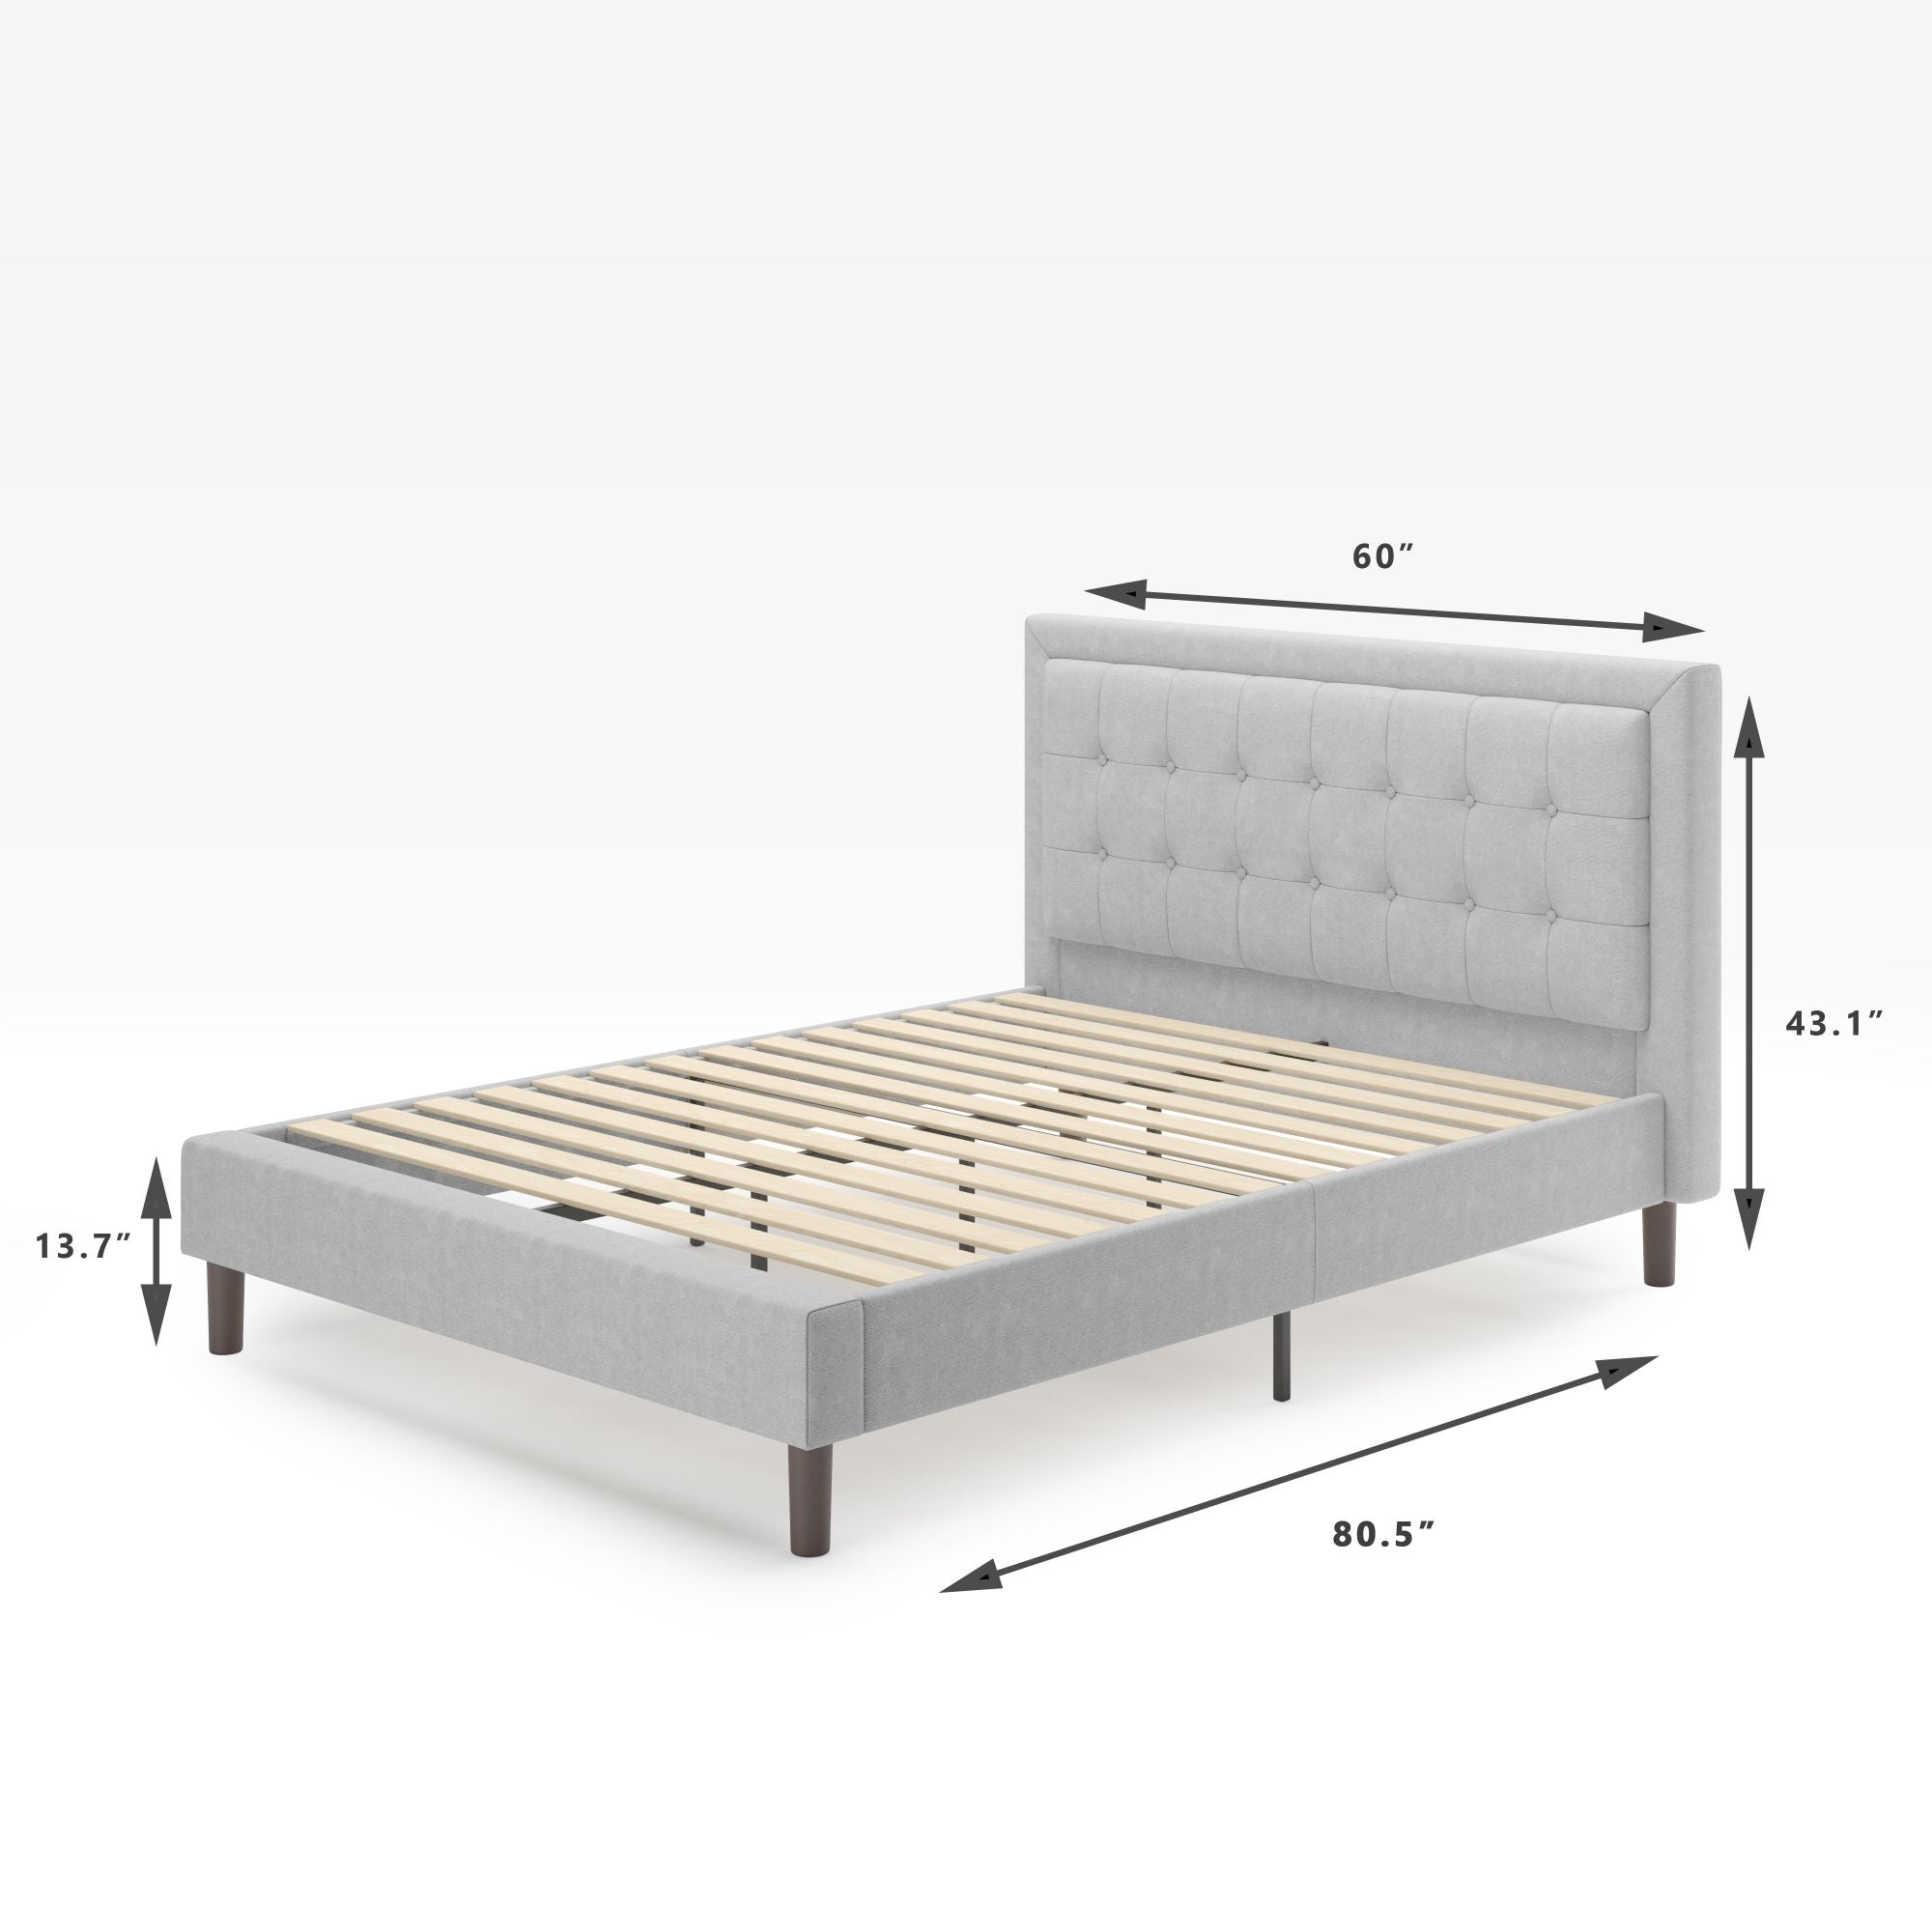 Dachelle Upholstered Platform bed frame dimensions